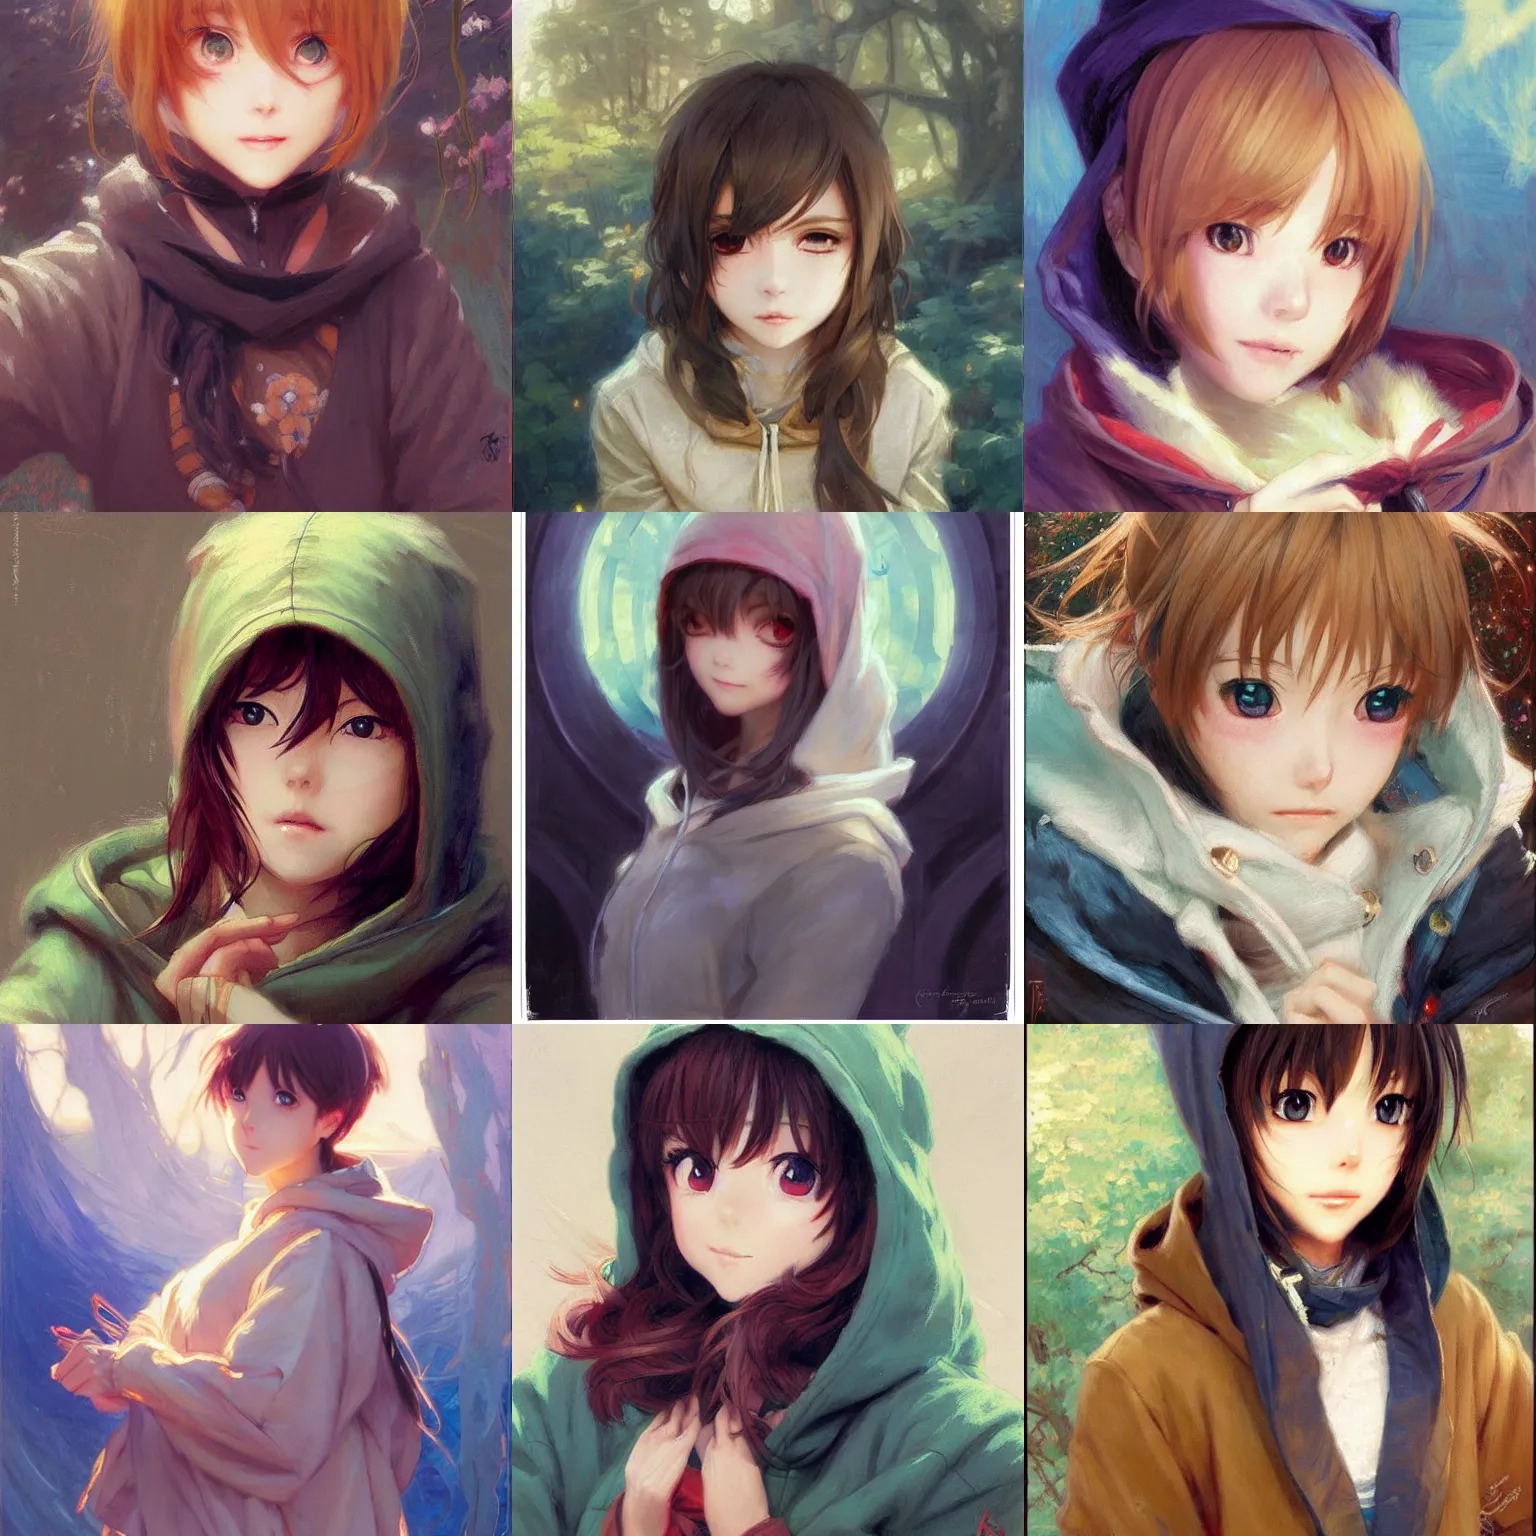 Prompt: cute anime girl portraits, wearing hoodie, anime, painting by gaston bussiere, craig mullins, j. c. leyendecker